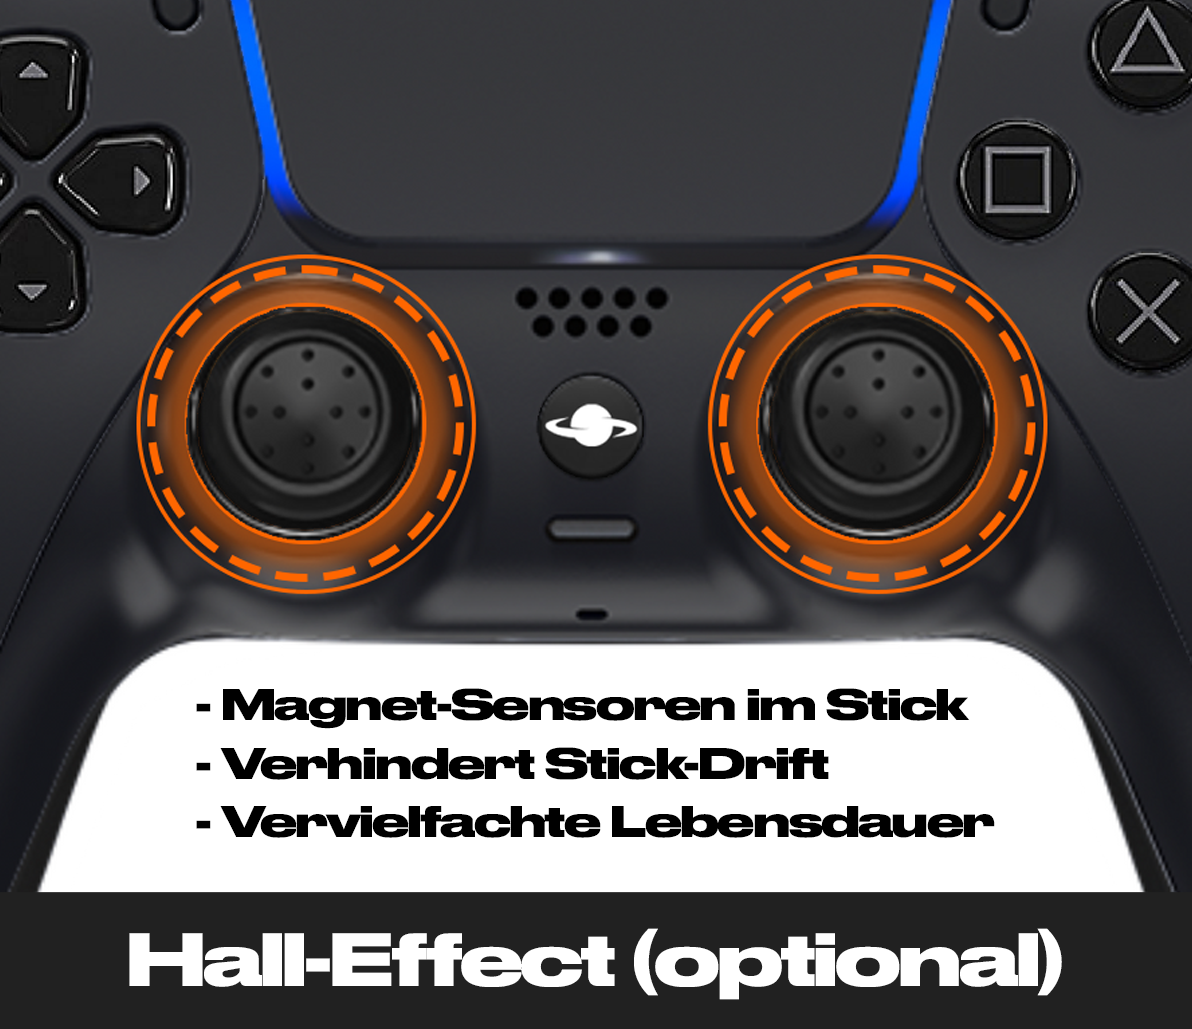 PS5 Custom Controller 'Chrom Rot'